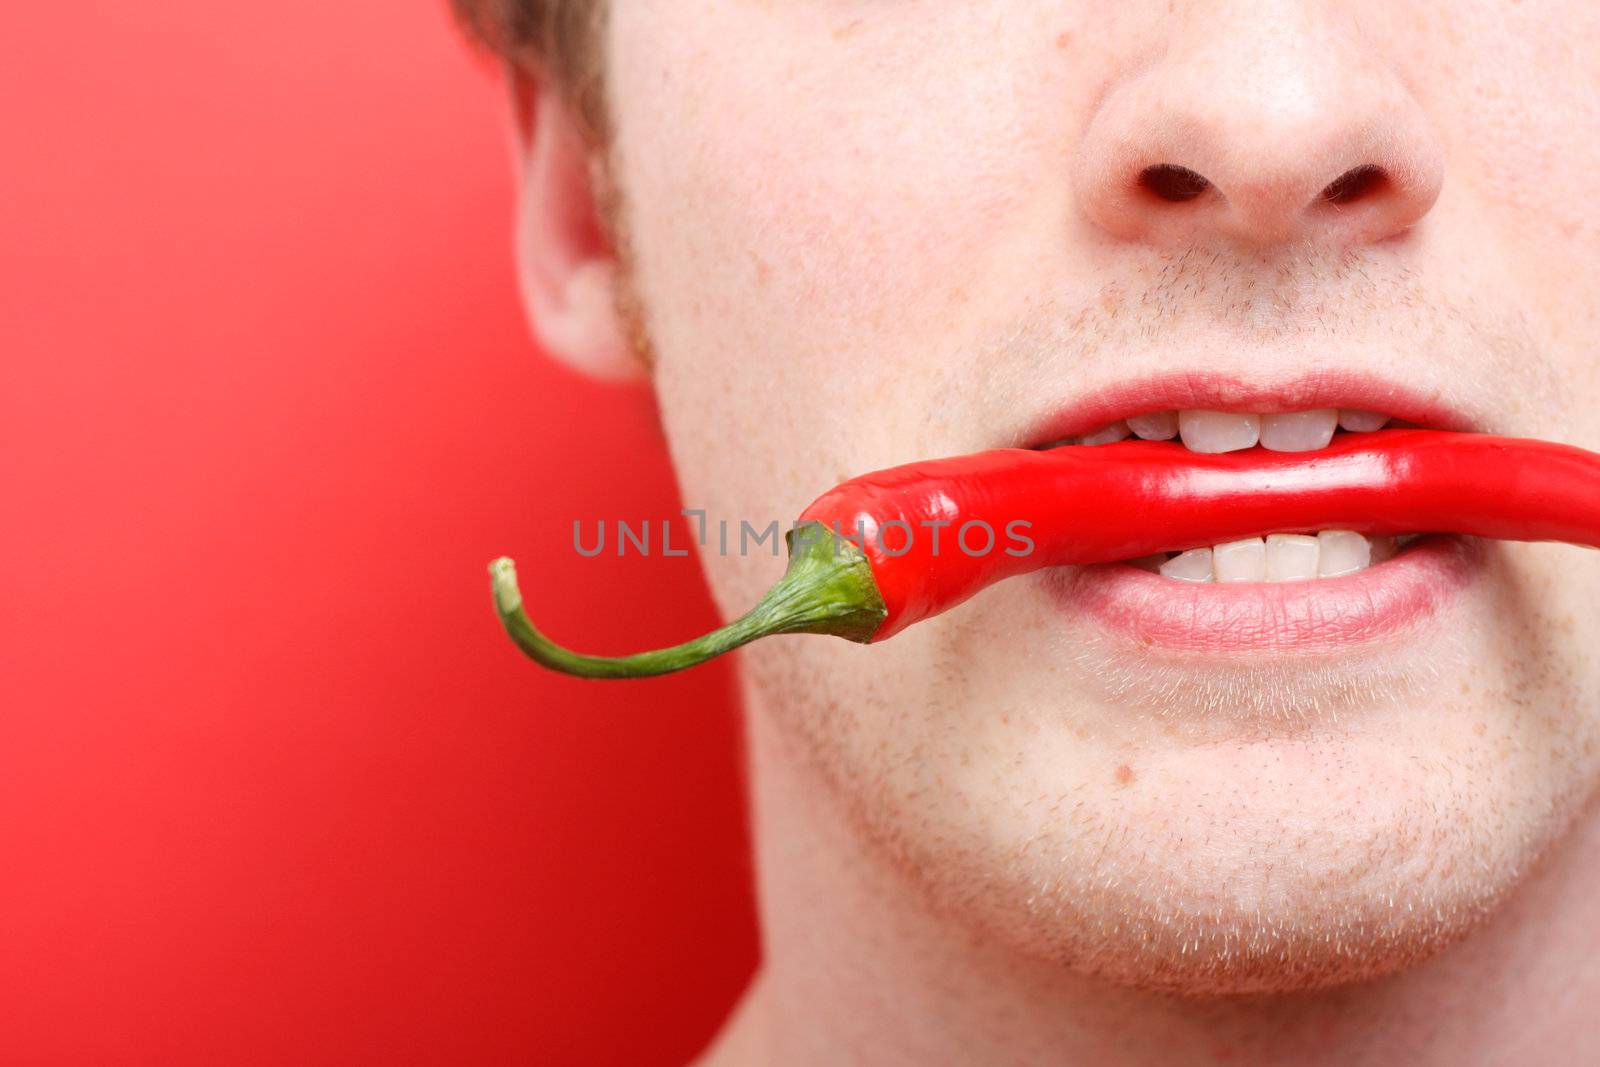 Eating chili pepper by leeser